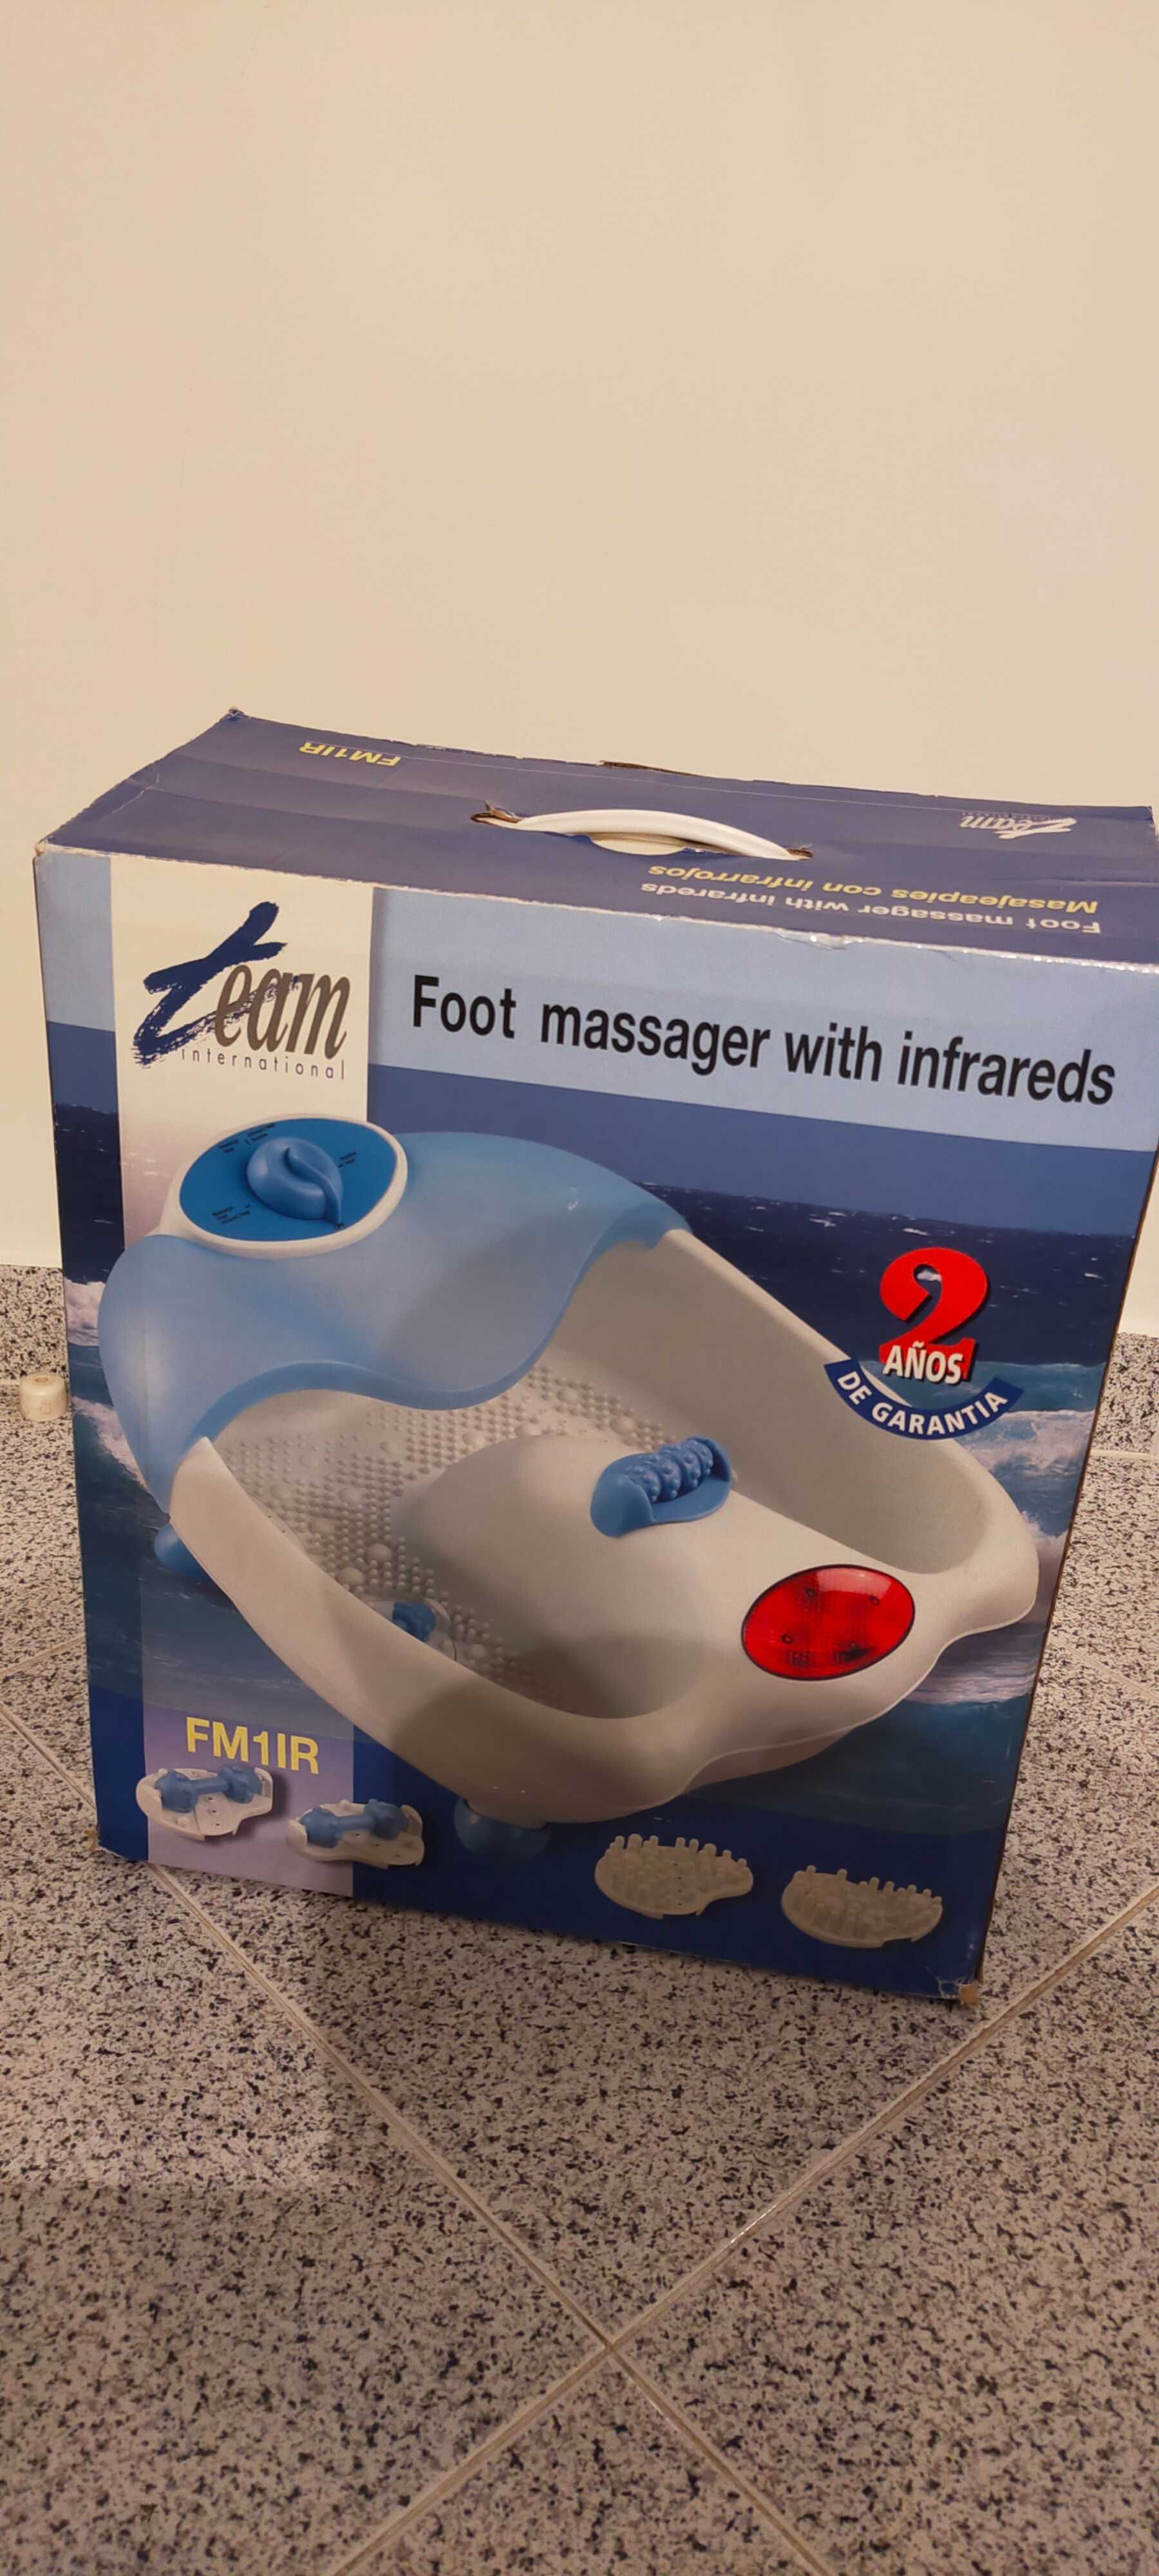 Massageador de pés nunca usado Team International